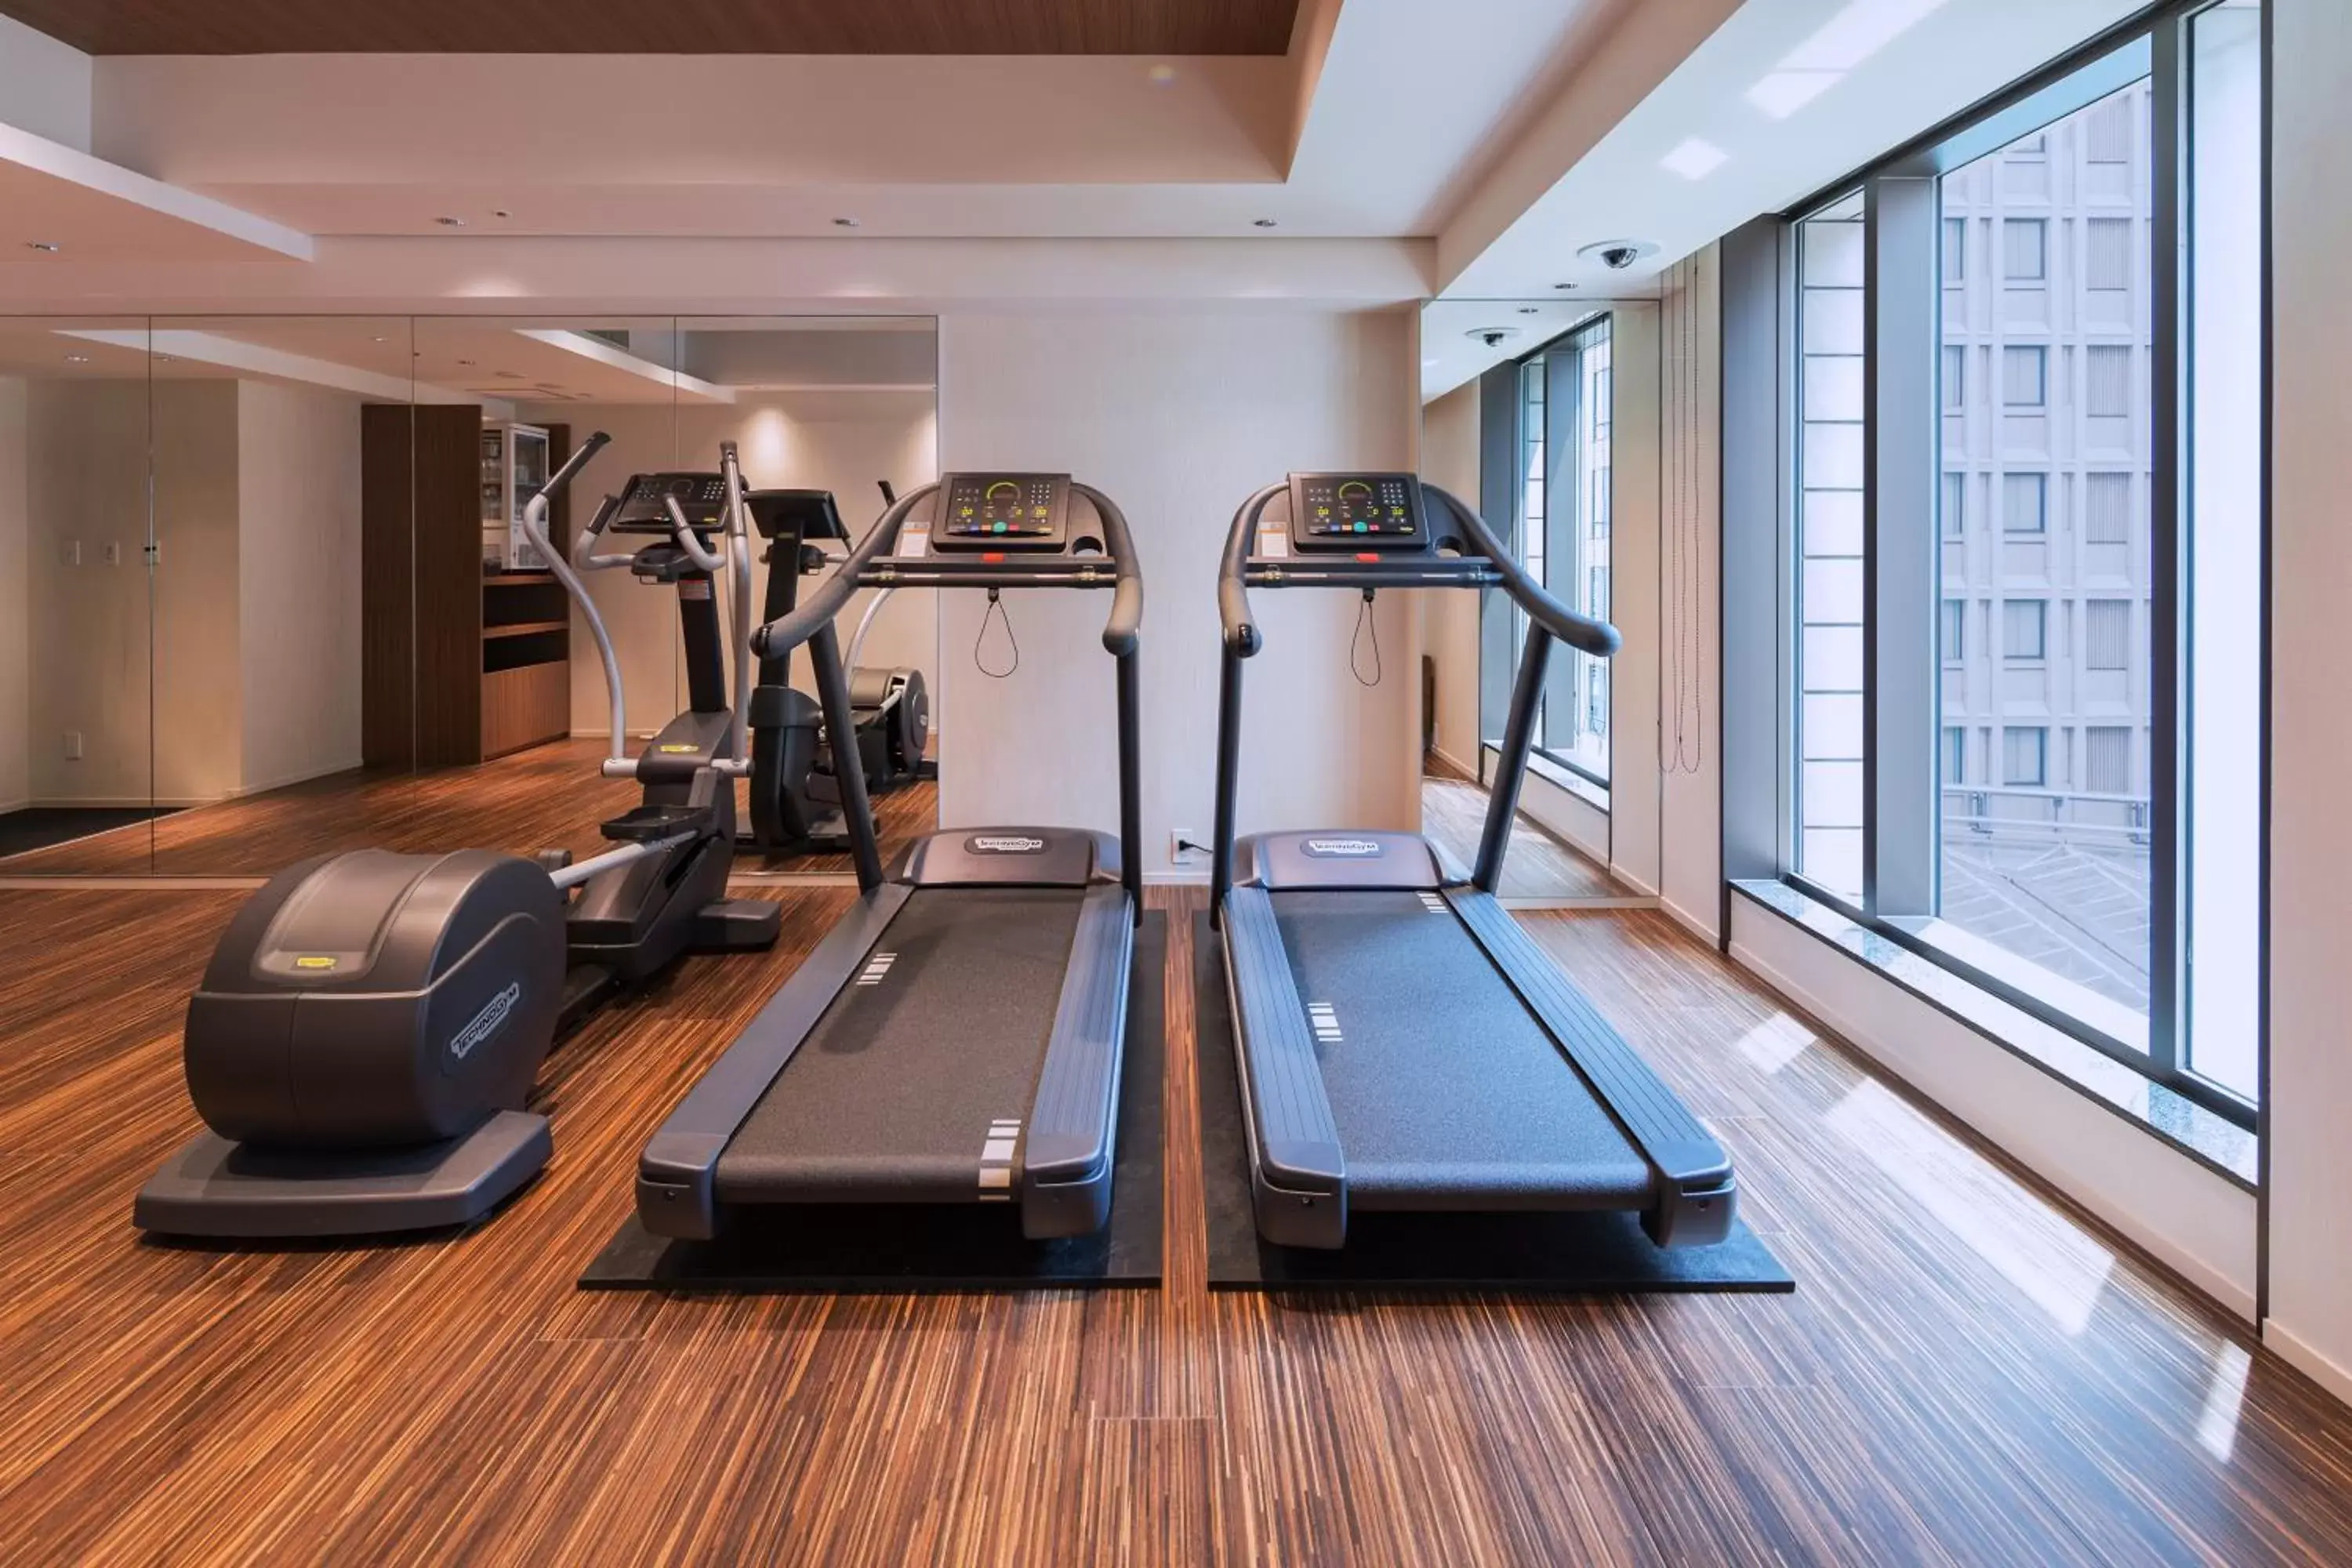 Fitness centre/facilities in Marunouchi Hotel